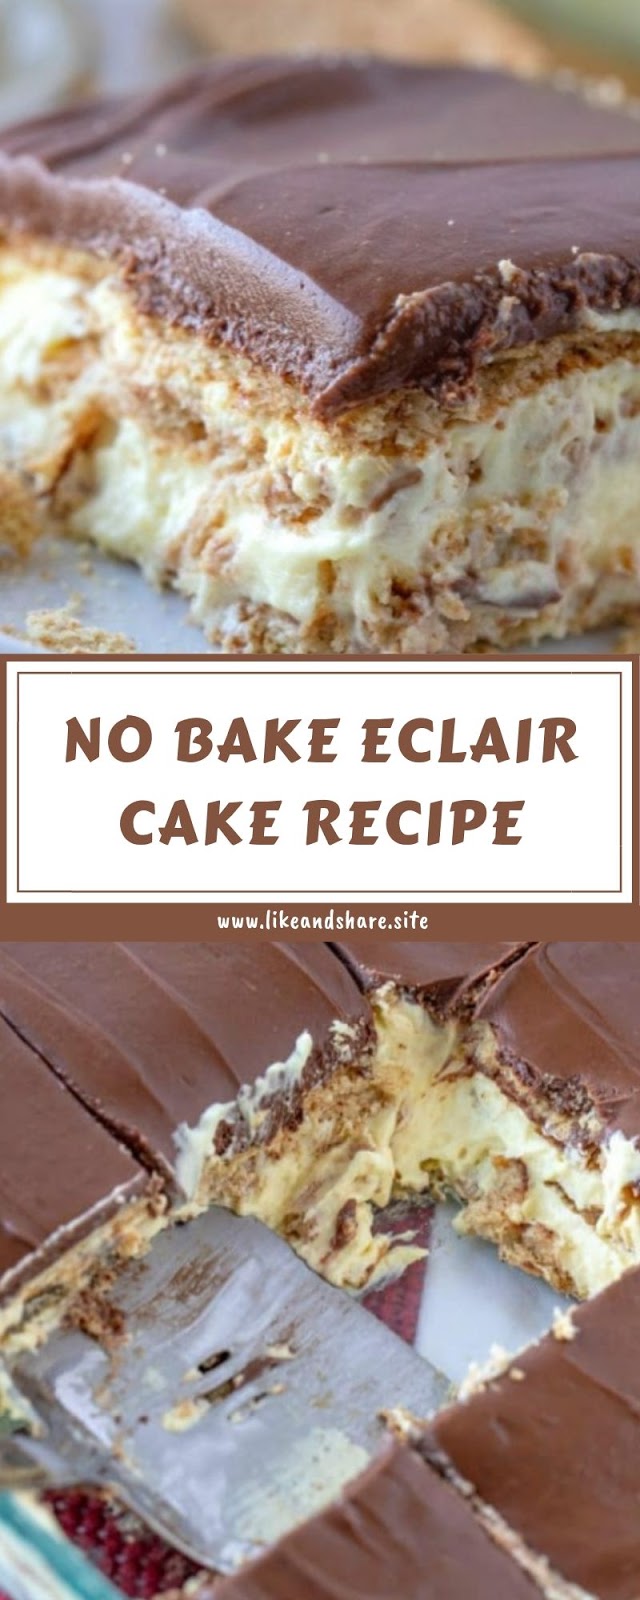 NO BAKE ECLAIR CAKE RECIPE